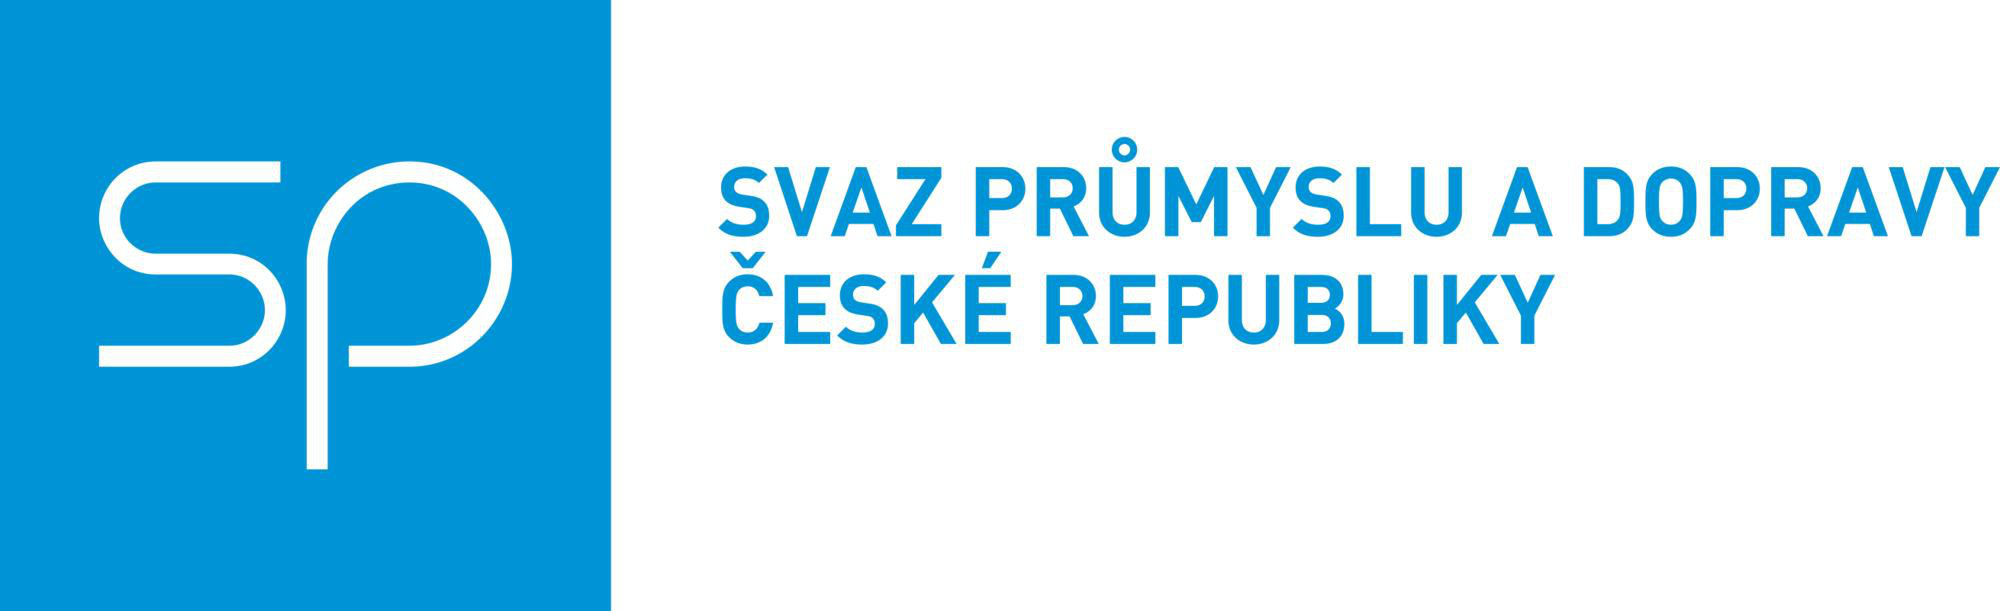 Svaz průmyslu a dopravy ČR logo